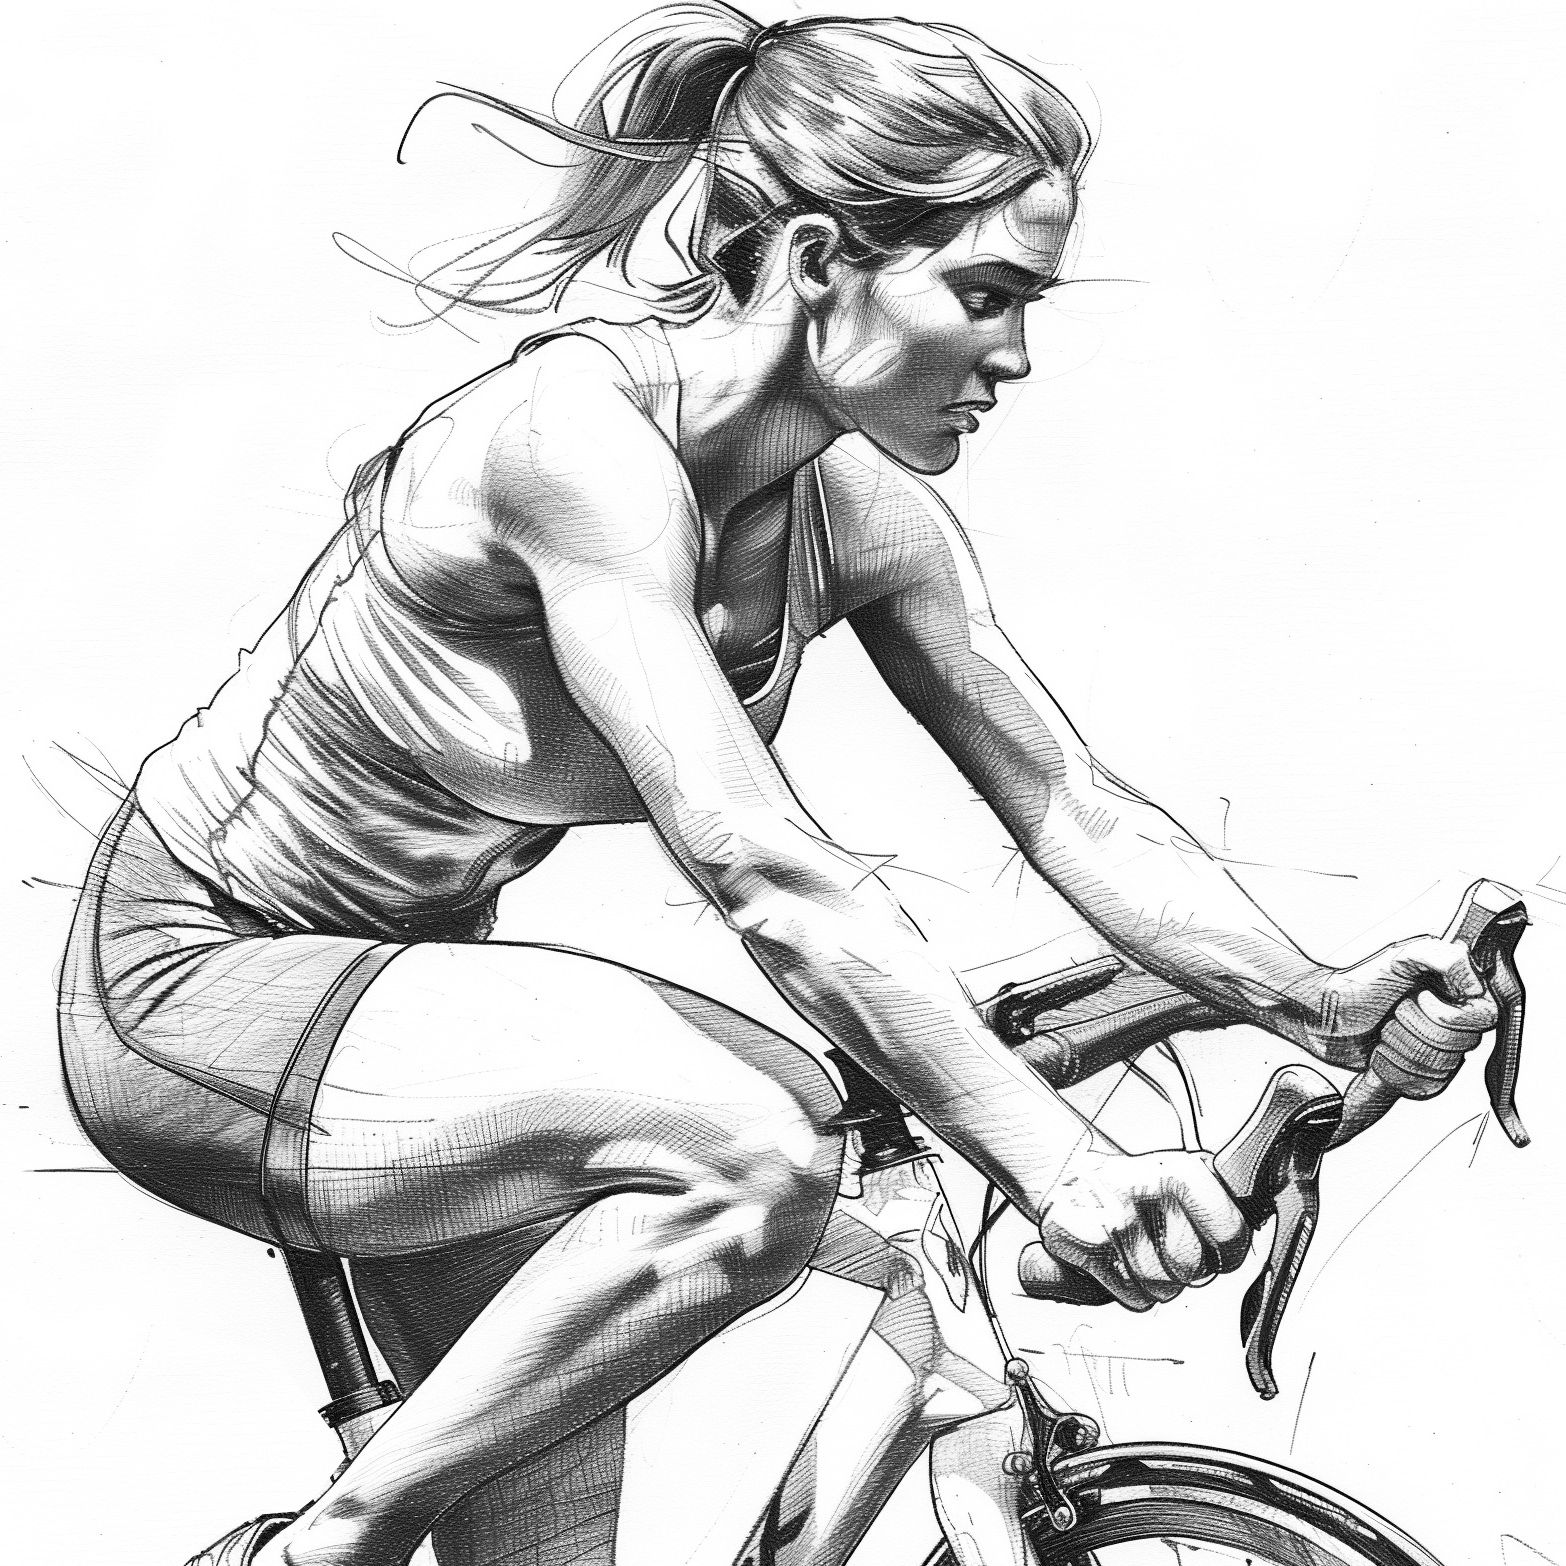 Bleistiftzeichnung einer jungen Frau auf dem Fahrrad, seitliche Ansicht